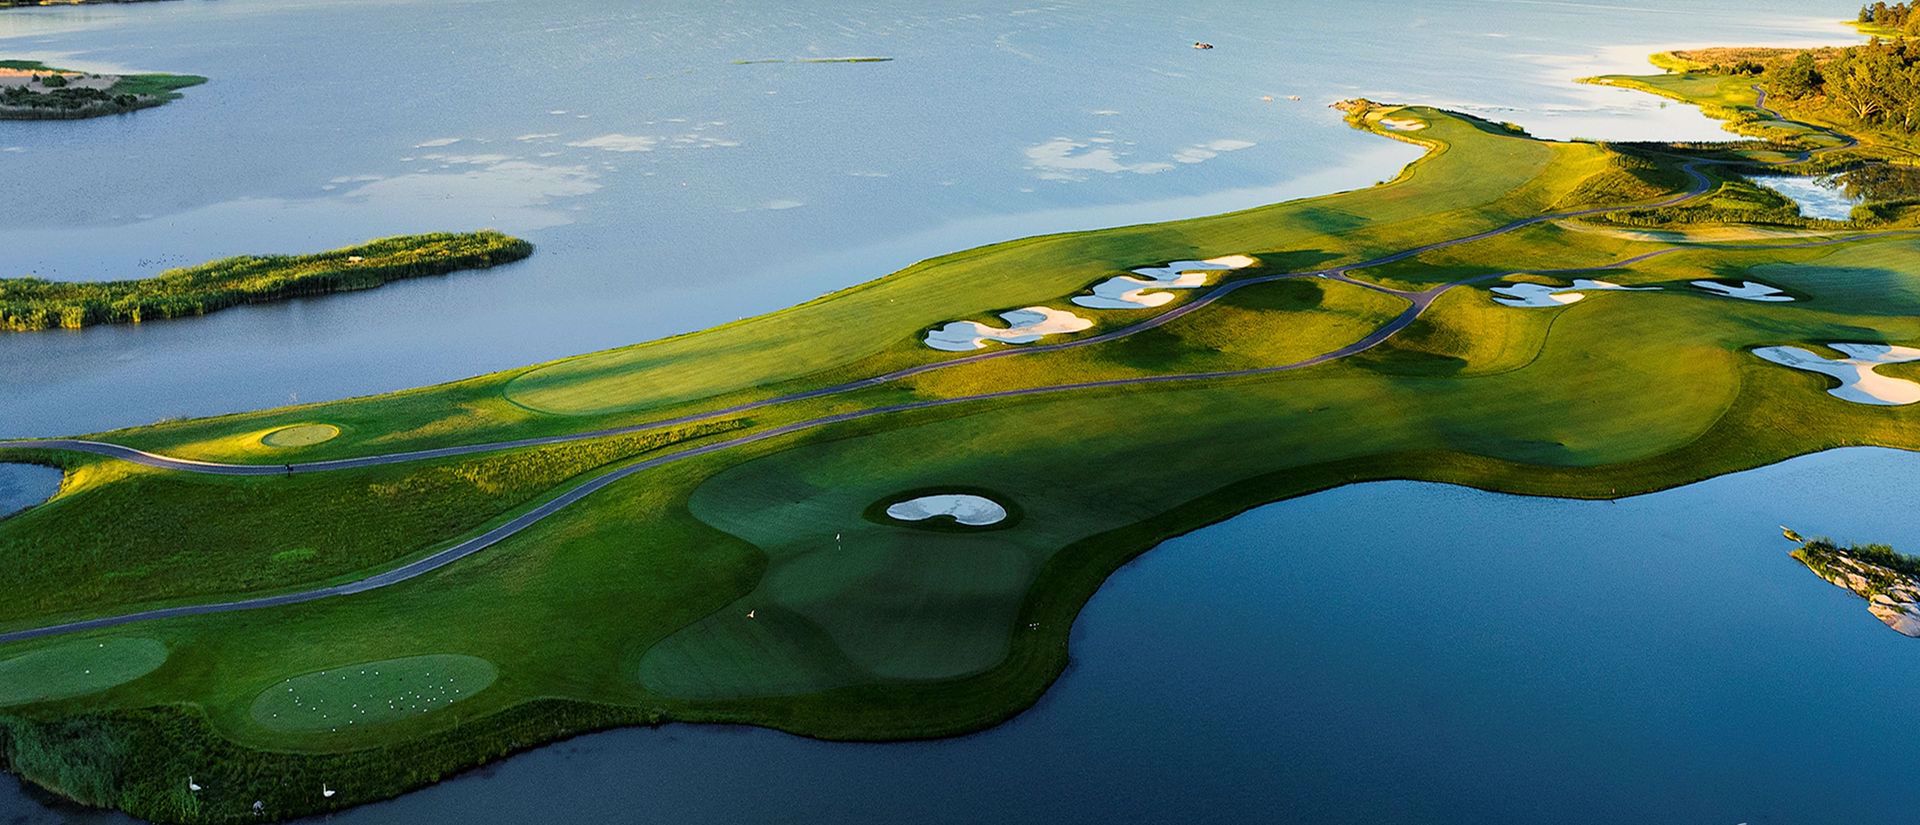 Nummer 1 in Schweden - Bro Hof Golf Course